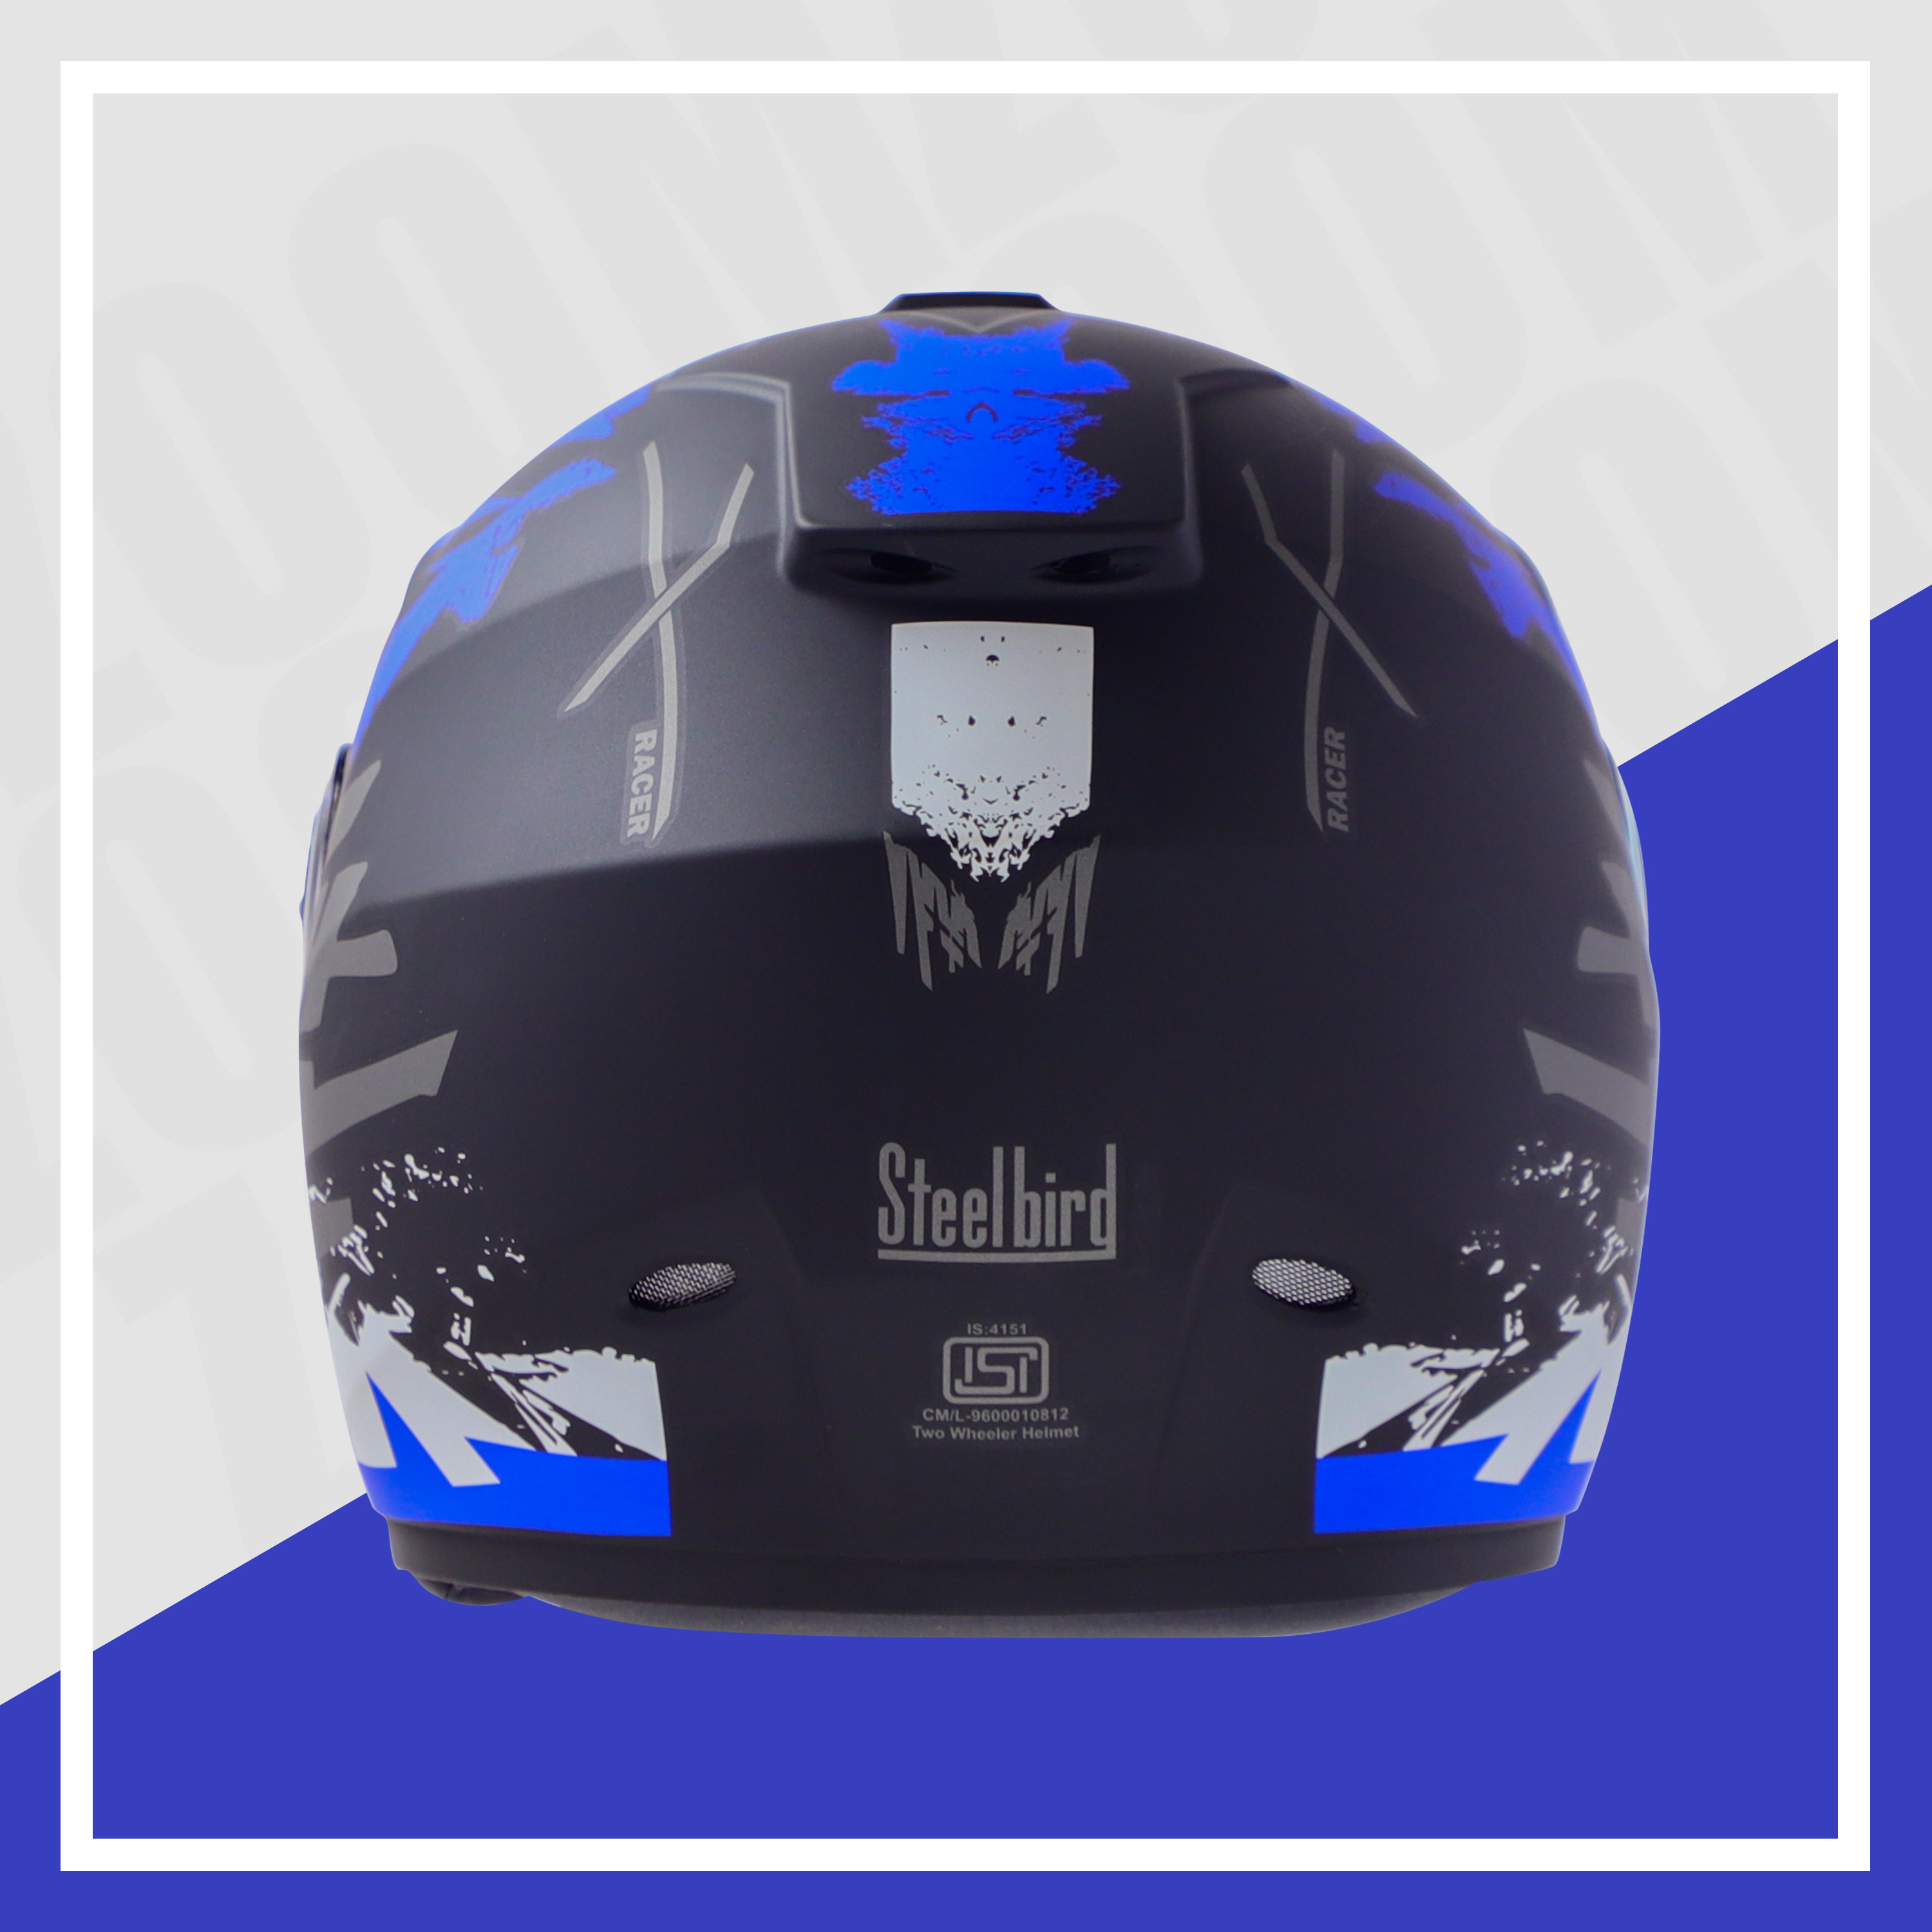 Steelbird SBH-11 Zoom Racer ISI Certified Full Face Graphic Helmet For Men And Women (Matt Black Blue With Chrome Rainbow Visor)